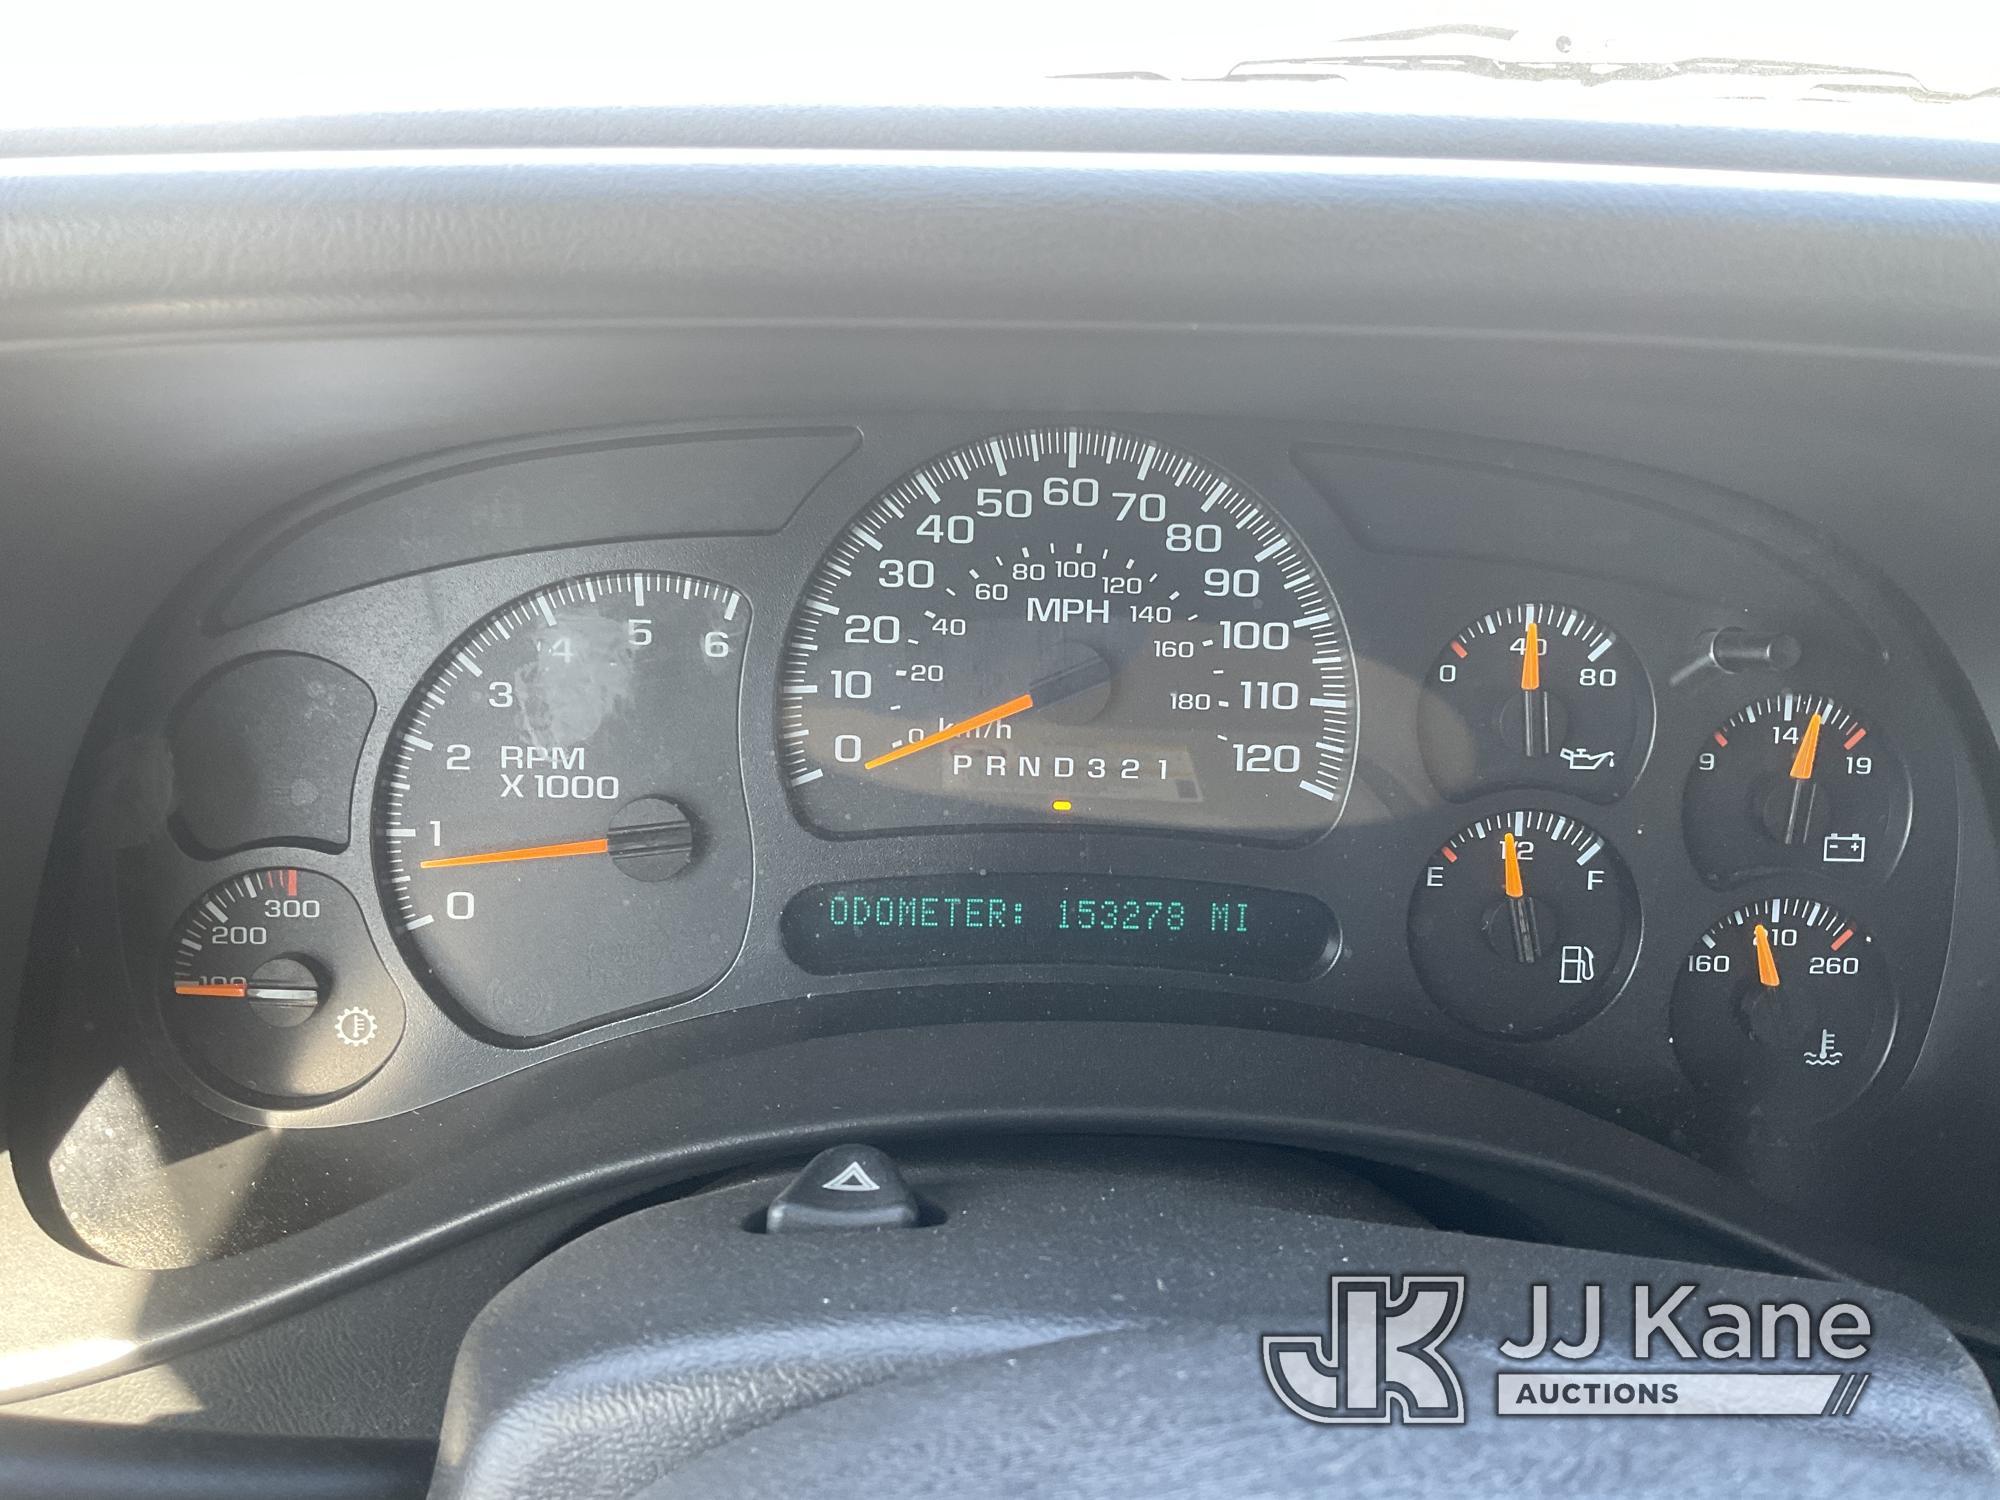 (Jurupa Valley, CA) 2006 Chevrolet Silverado 2500HD Extended-Cab Utility Truck Runs & Moves